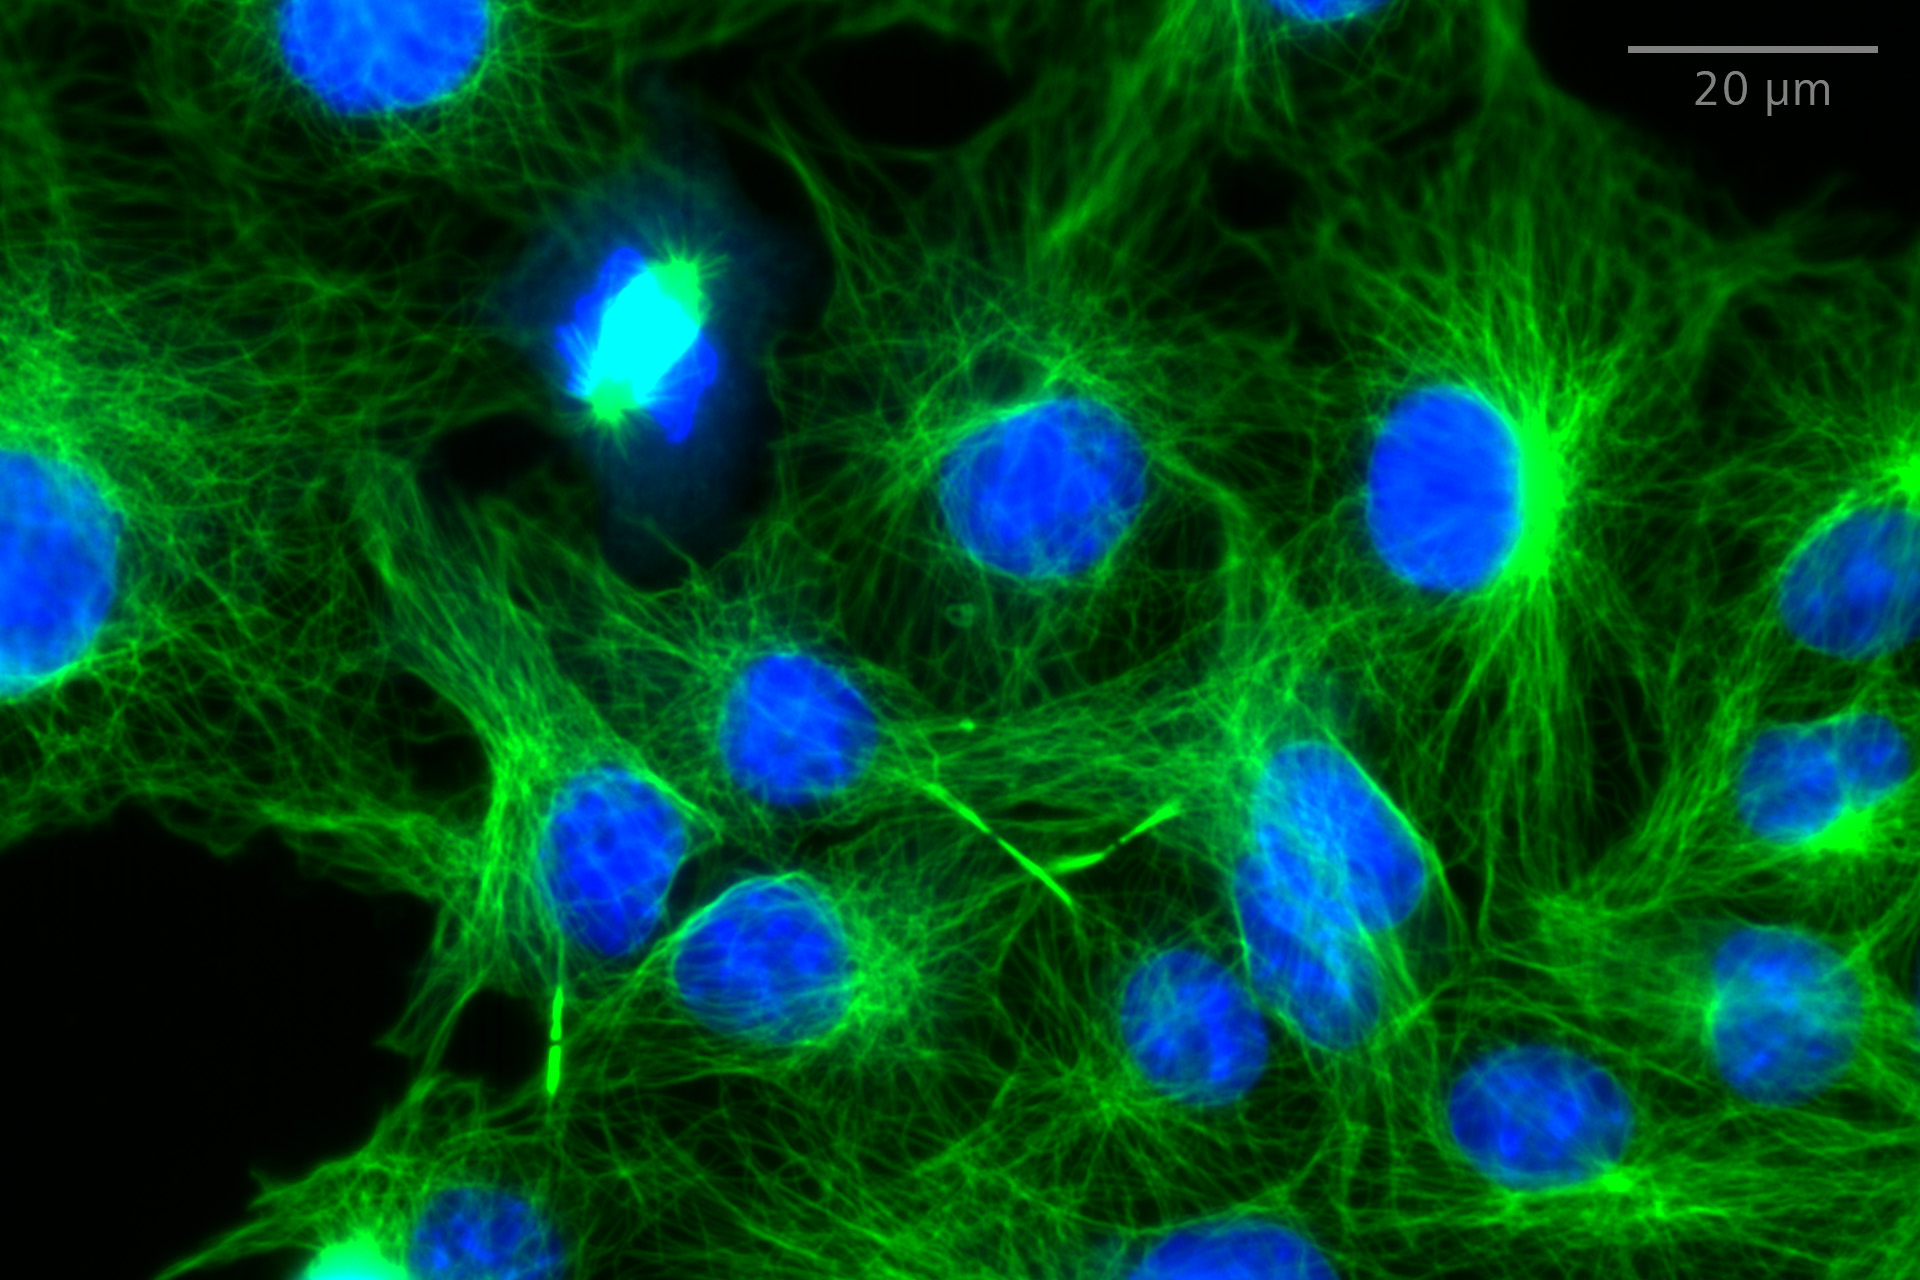 SIM² Apotome : Comparaison d'images en champ large et d'images planes SIM² Apotome de cellules COS-7 colorées pour les microtubules (anti-alpha-tubuline Alexa Fluor 488, vert) et les noyaux (Hoechst, bleu). Objectif : LD LCI Plan-Apochromat 25× / 0,8 Imm Corr.